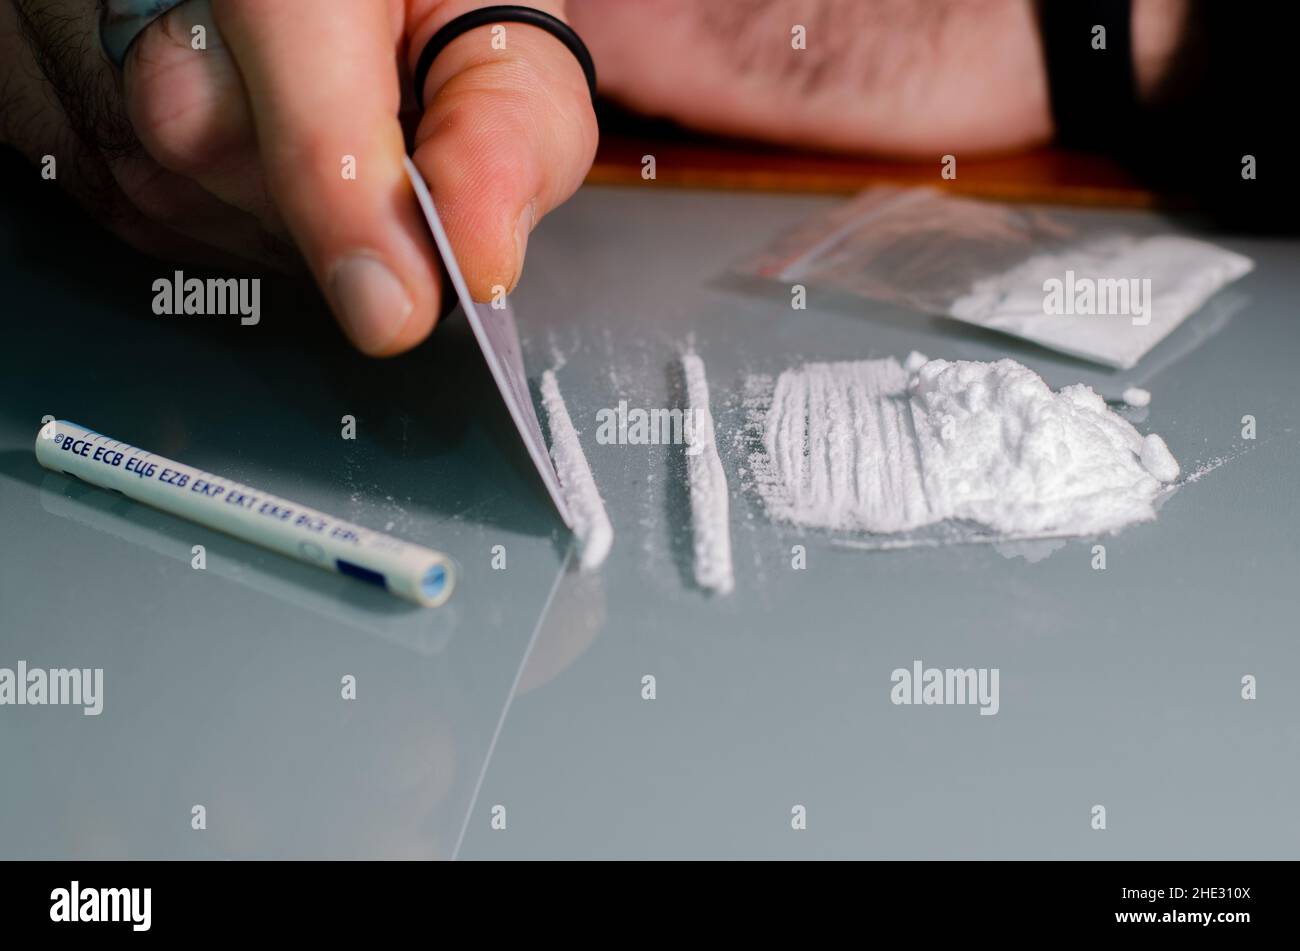 L'homme fractionne la cocaïne en bandes et puis en ronflements.Concept de narcotiques. Banque D'Images